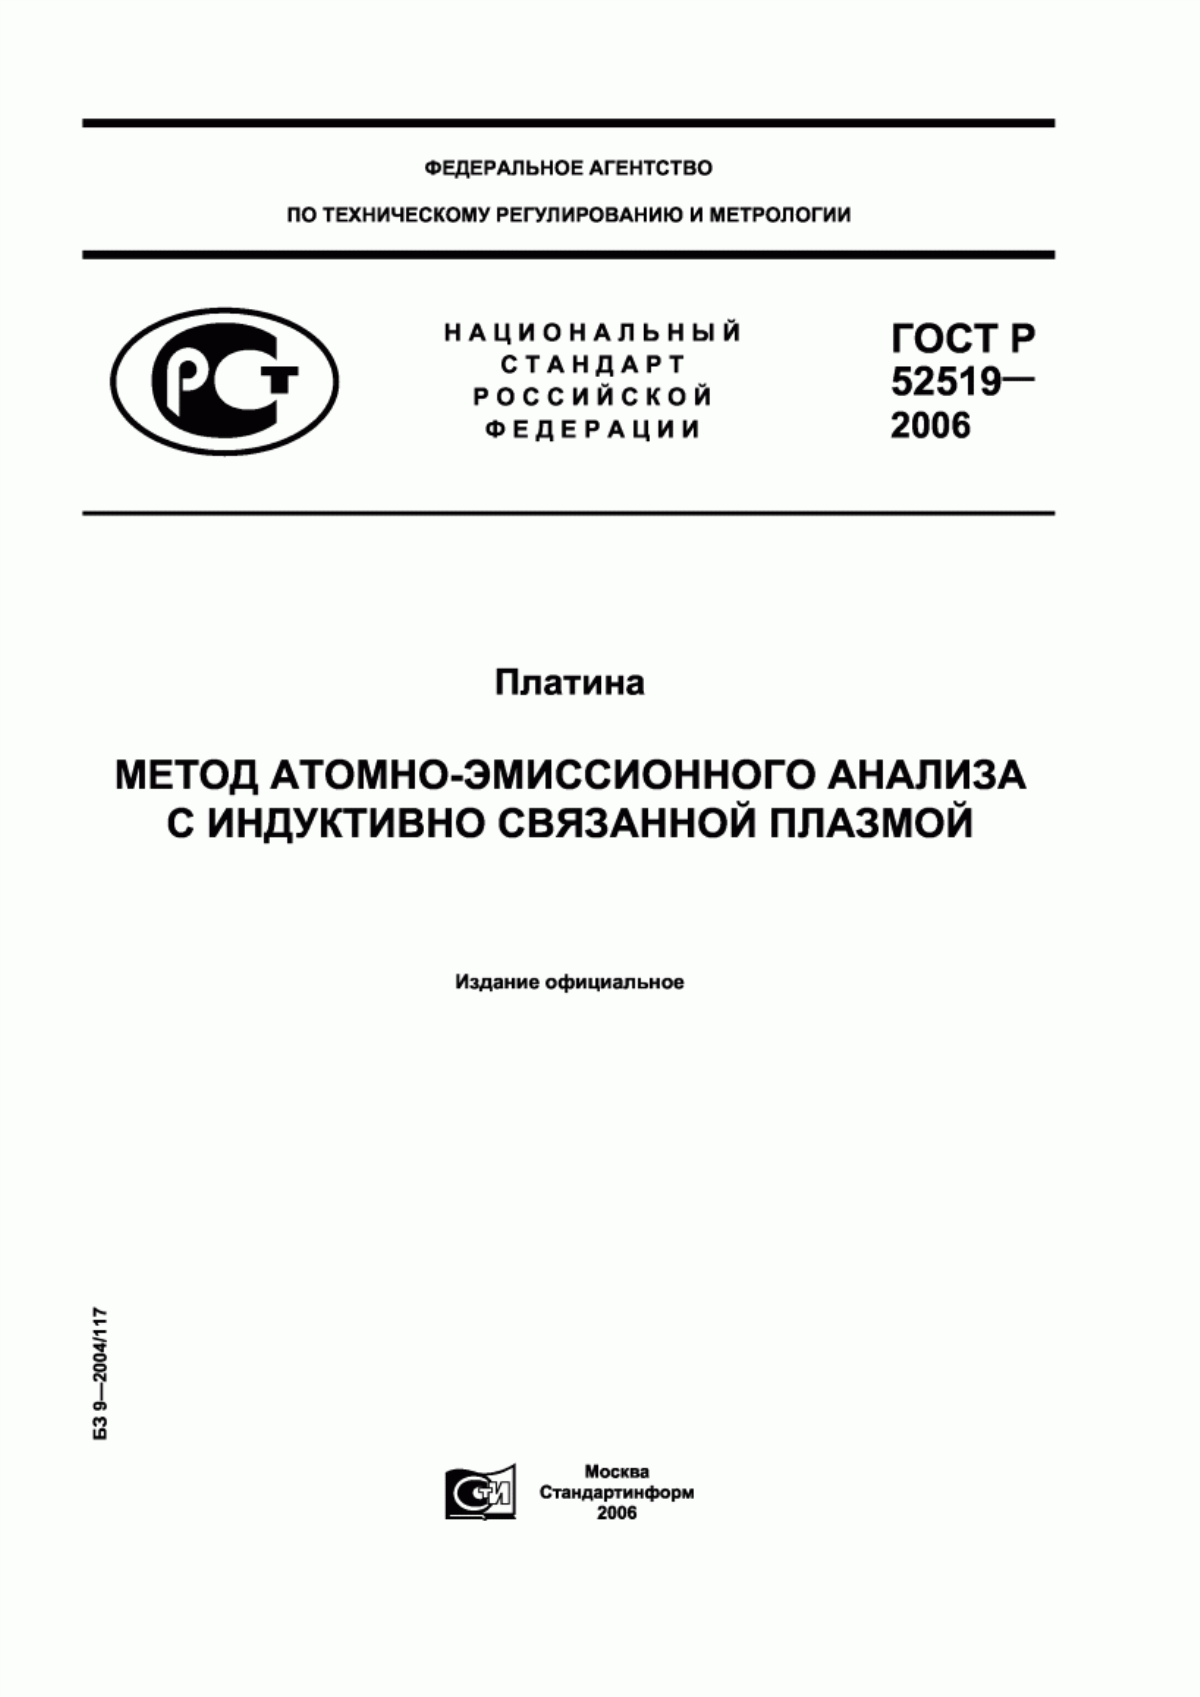 ГОСТ Р 52519-2006 Платина. Метод атомно-эмиссионного анализа с индуктивно связанной плазмой